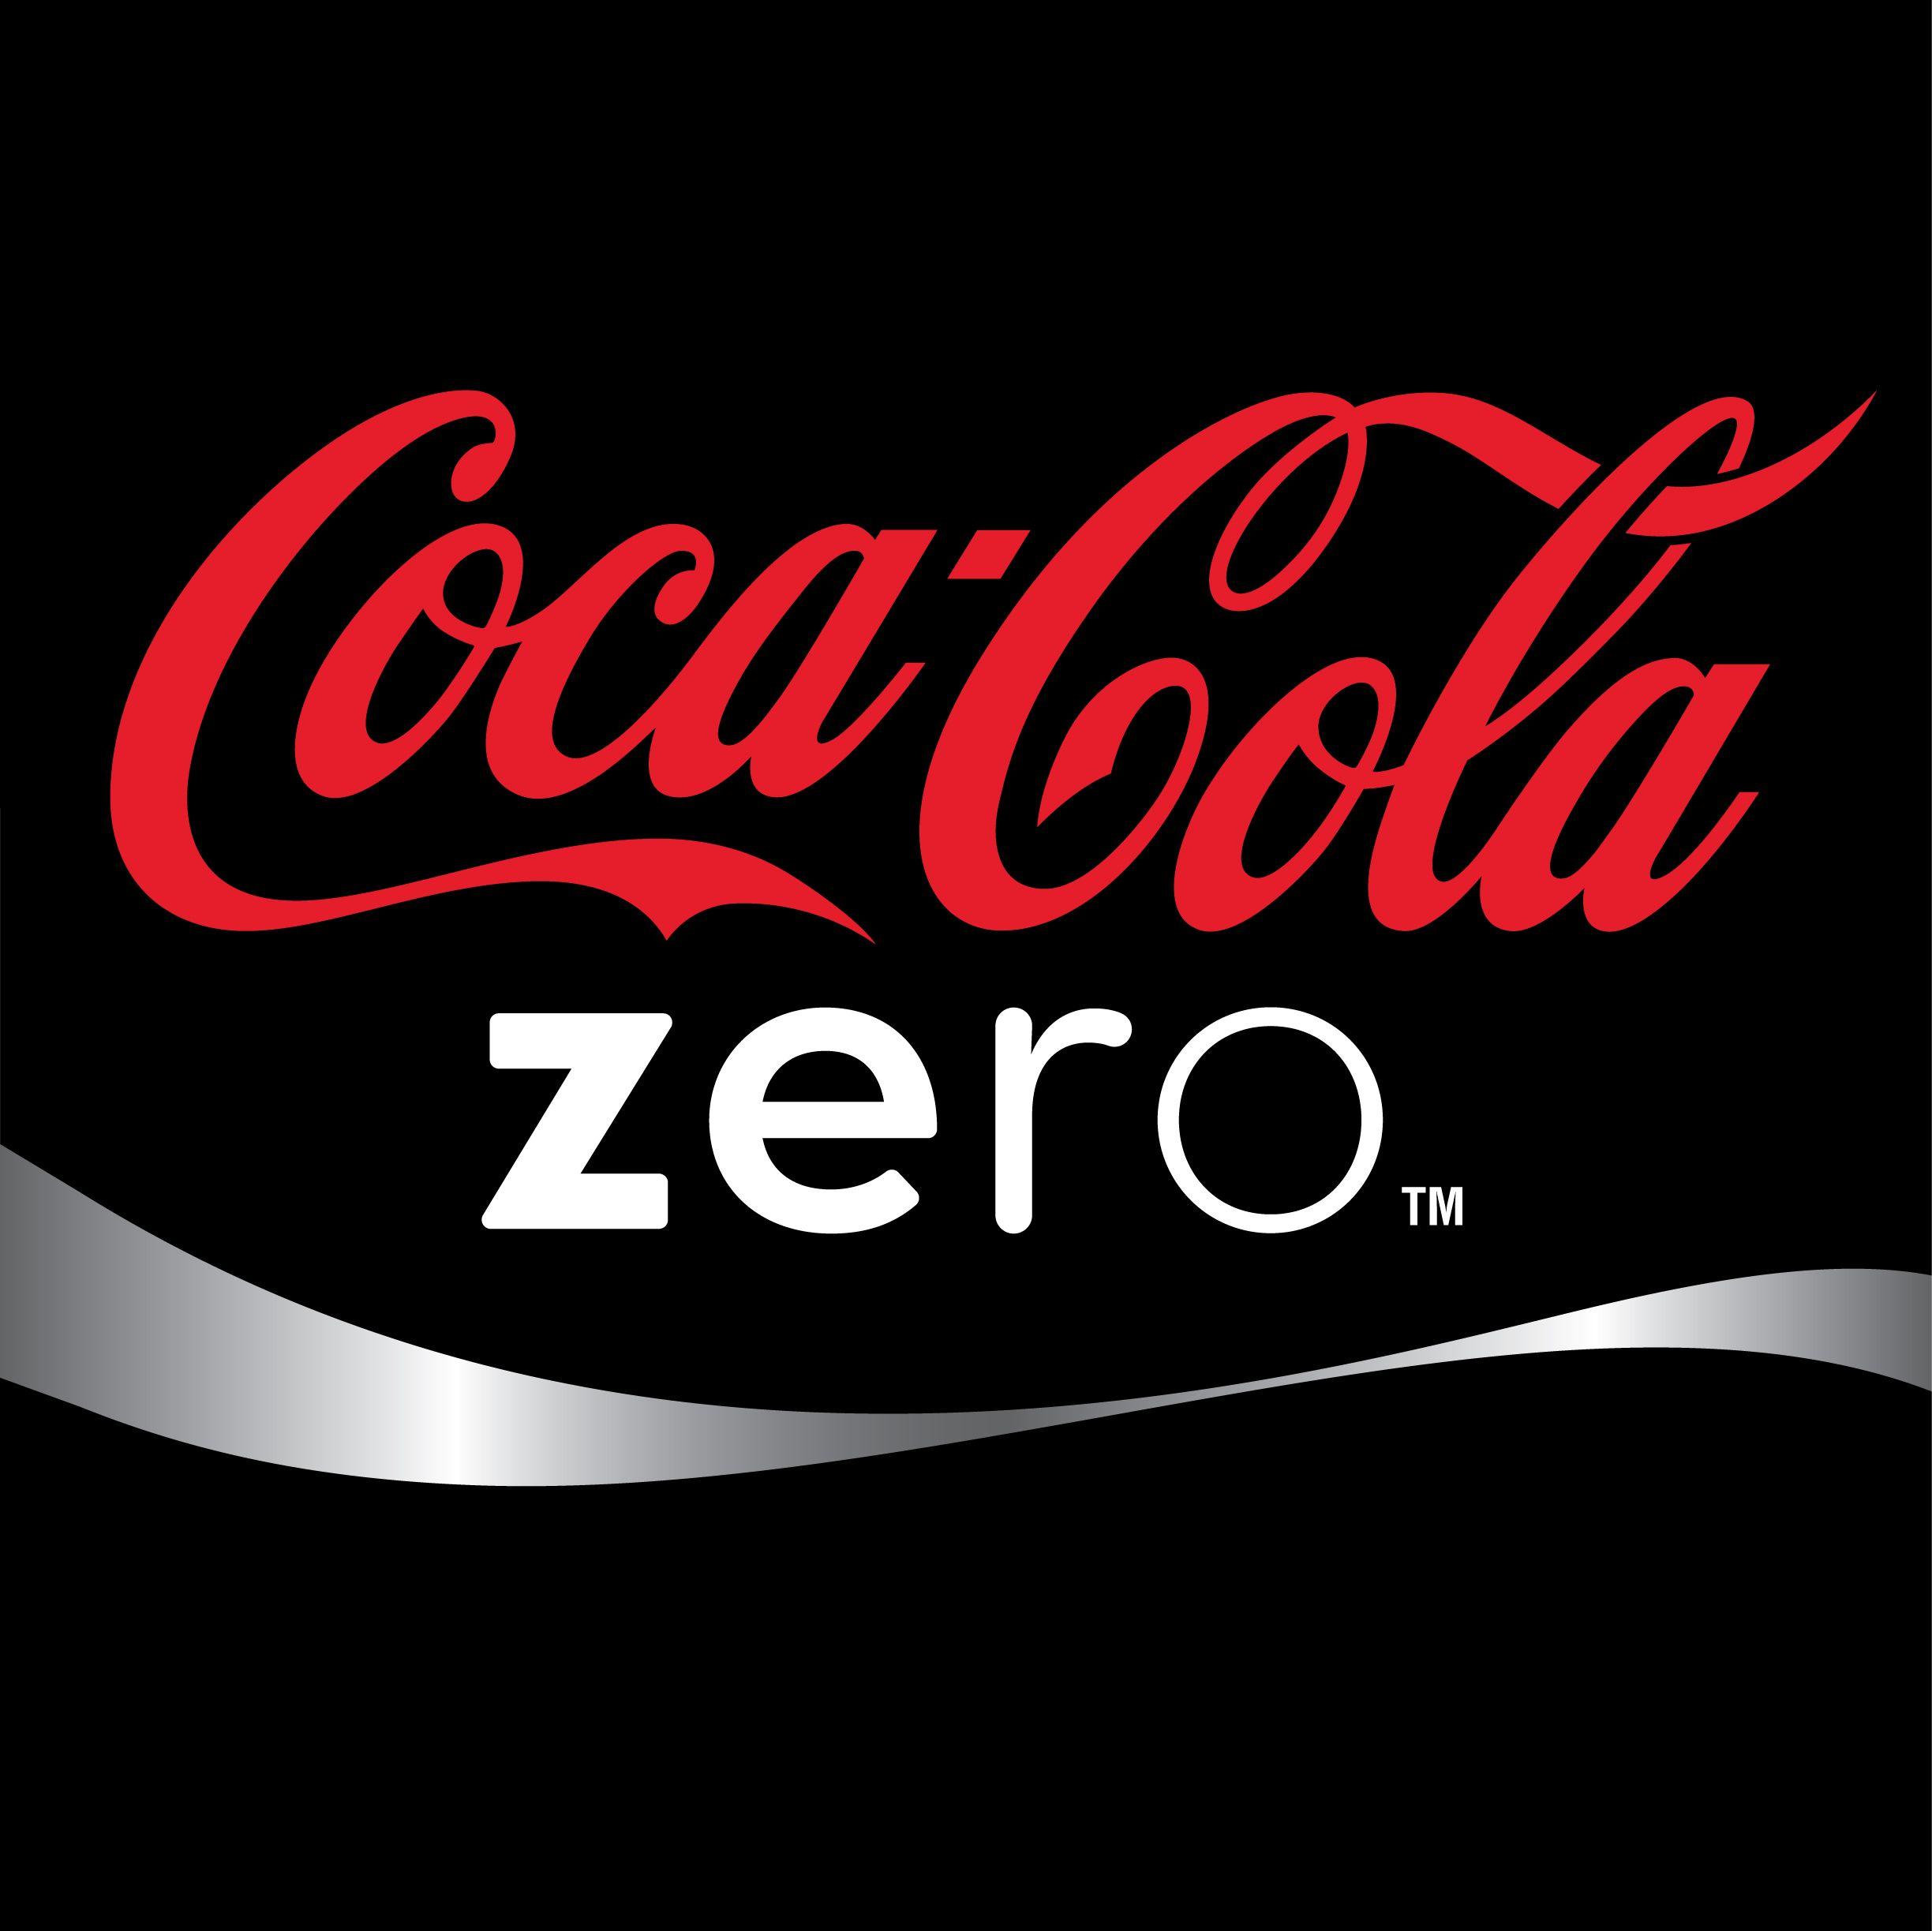 Coca-Cola Zero Logo - Coca Cola Zero